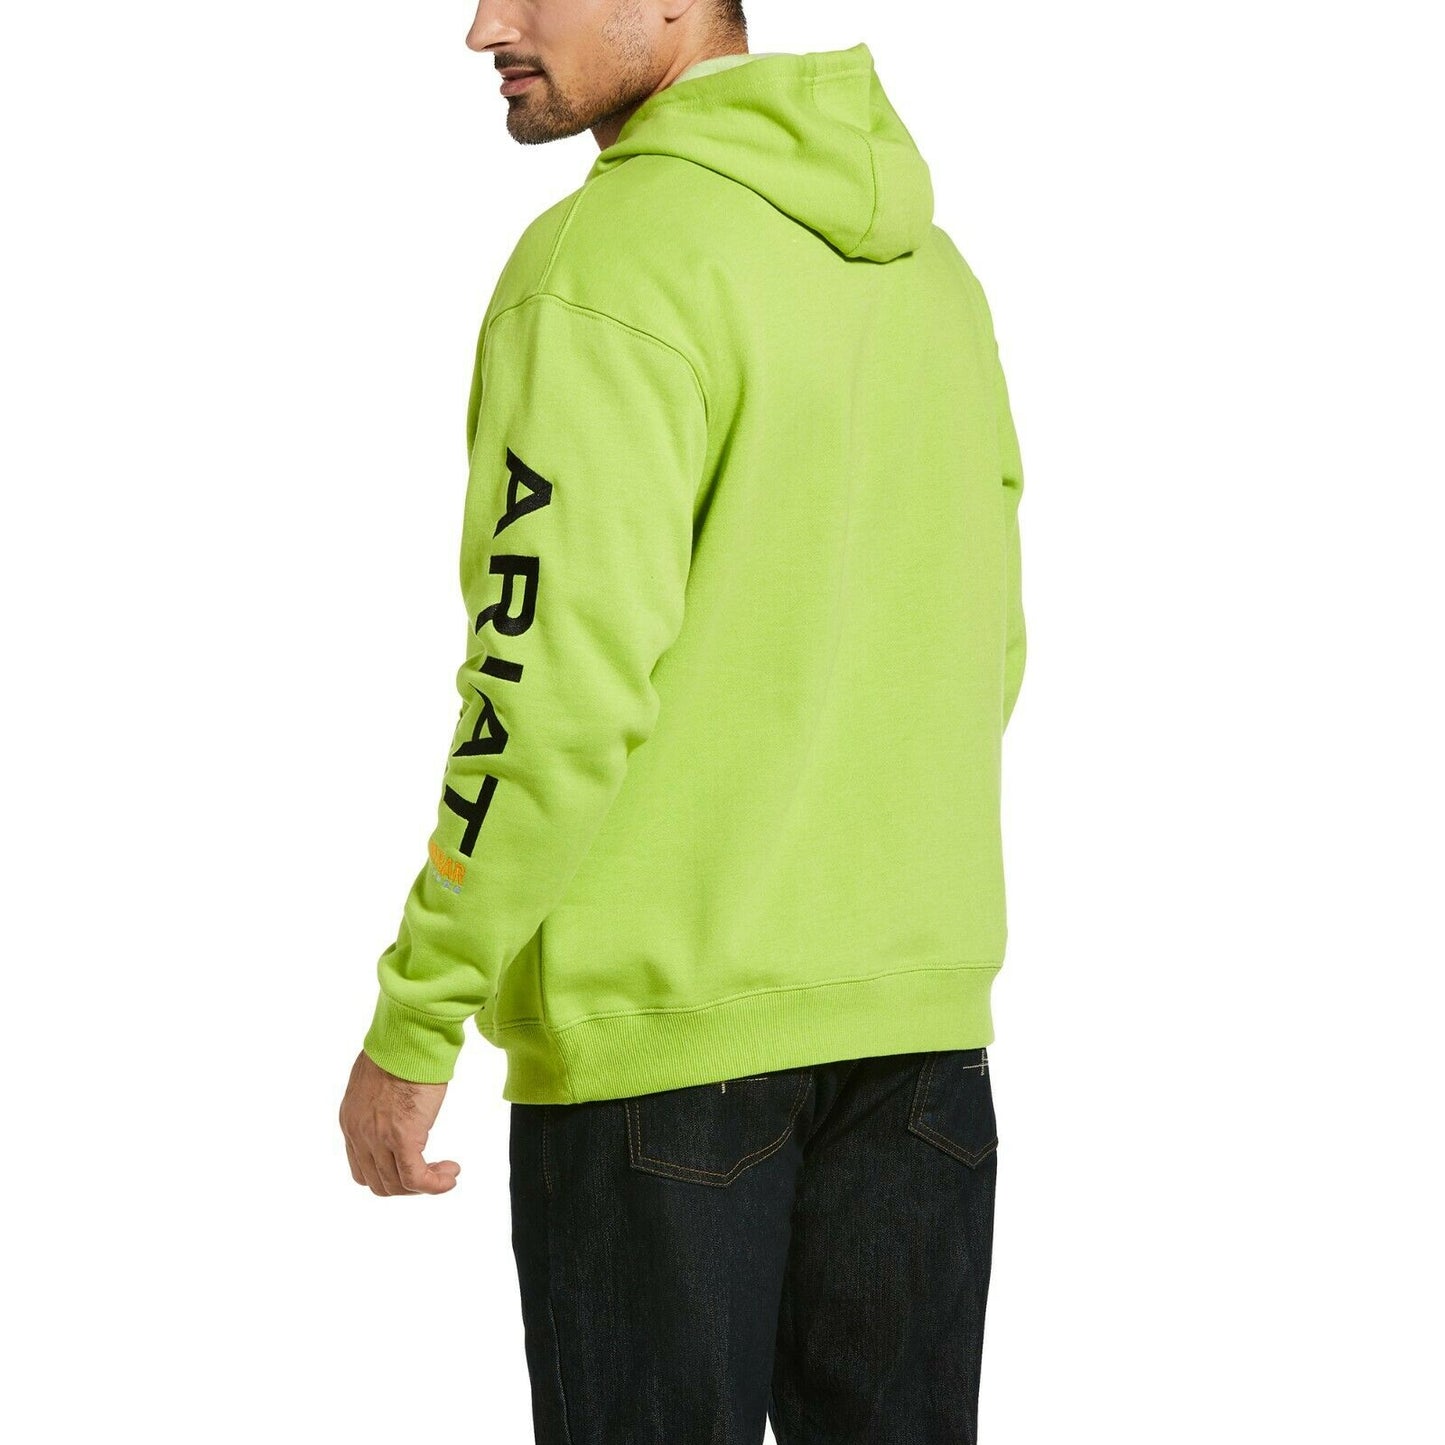 Ariat® Men's Rebar Graphic Logo Lime Green & Black Work Hoodie 10032994